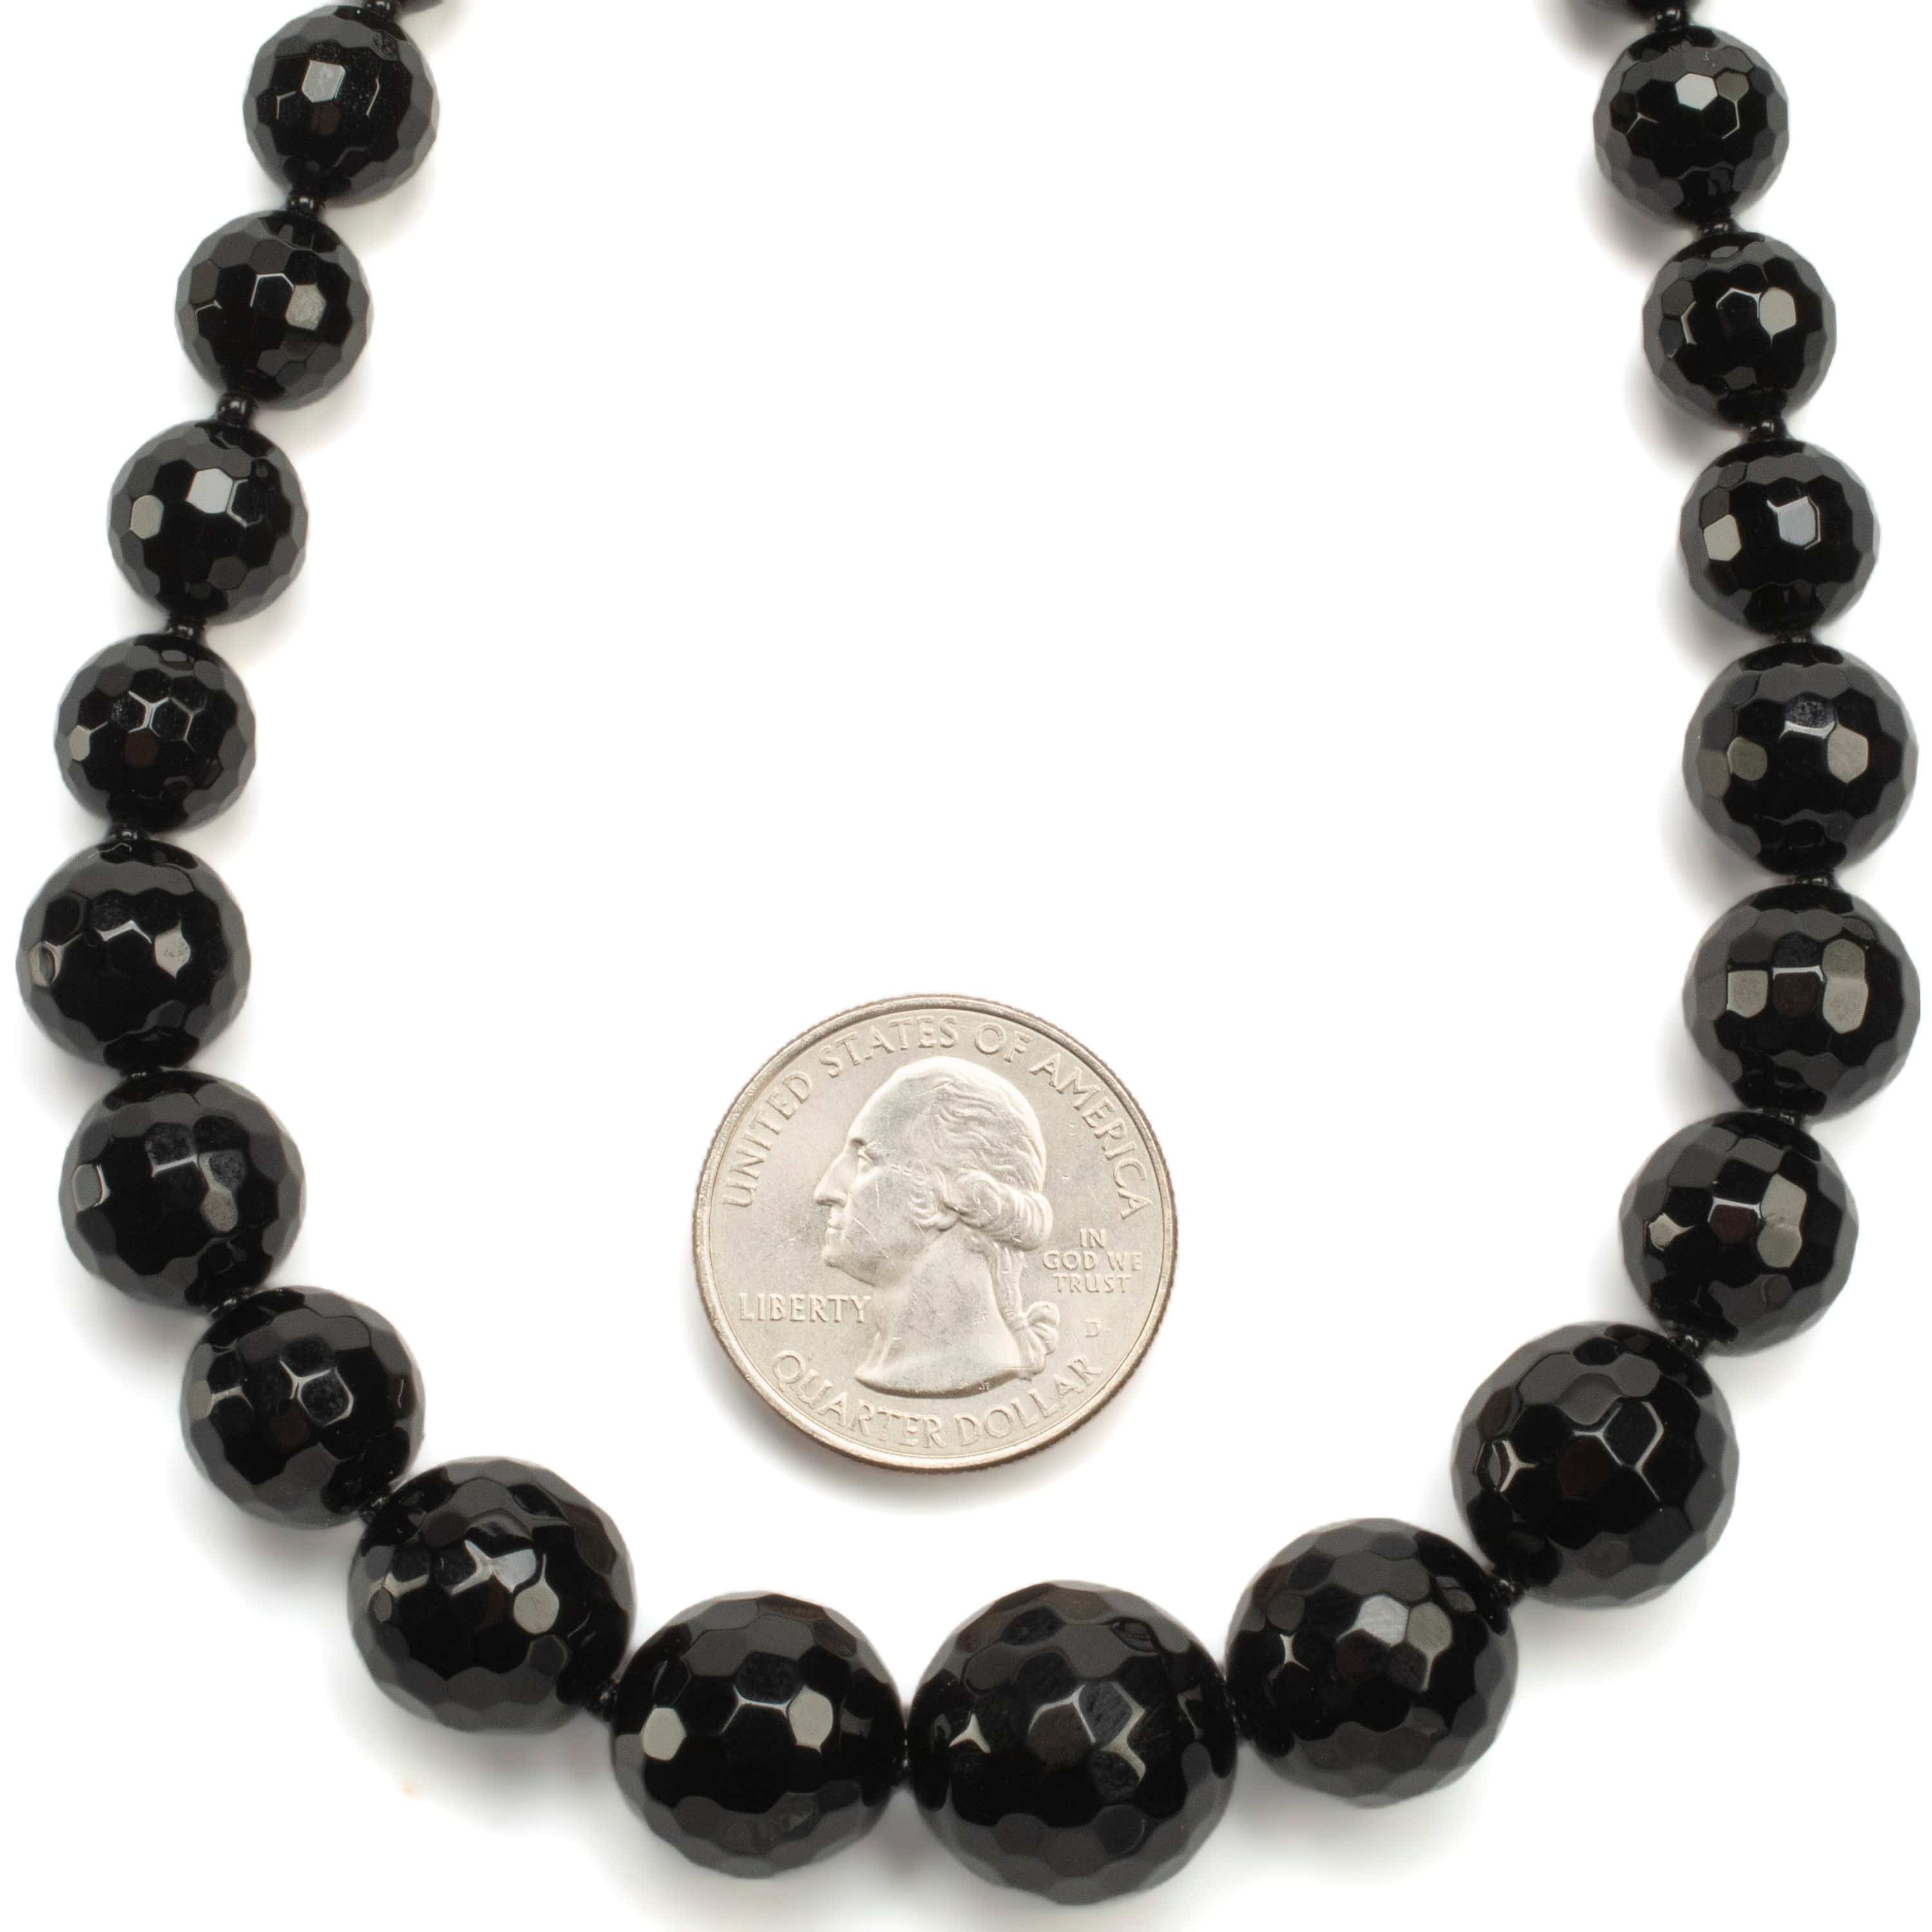 KALIFANO Gemstone Necklaces Black Agate Beads Gemstone Necklace GOLD-NGP-016